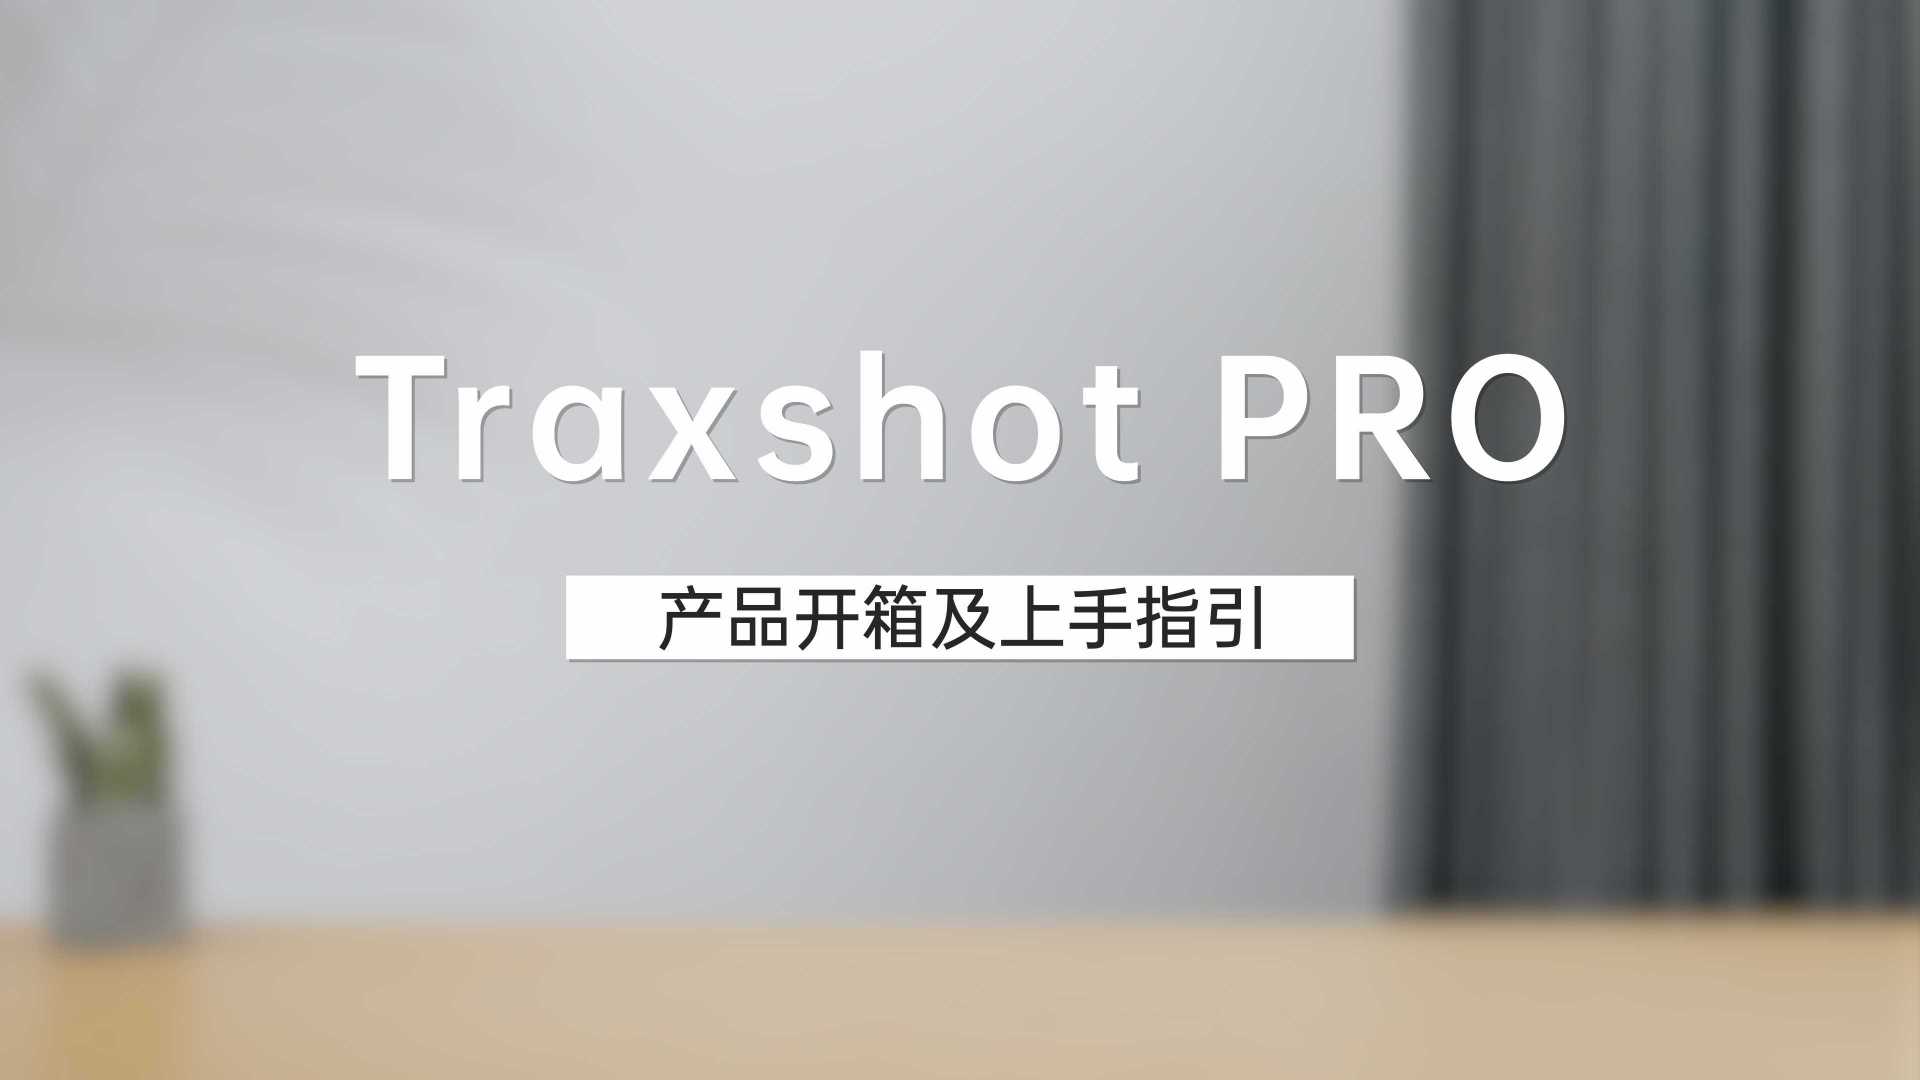 【科唛Traxshot PRO】产品开箱及上手指引